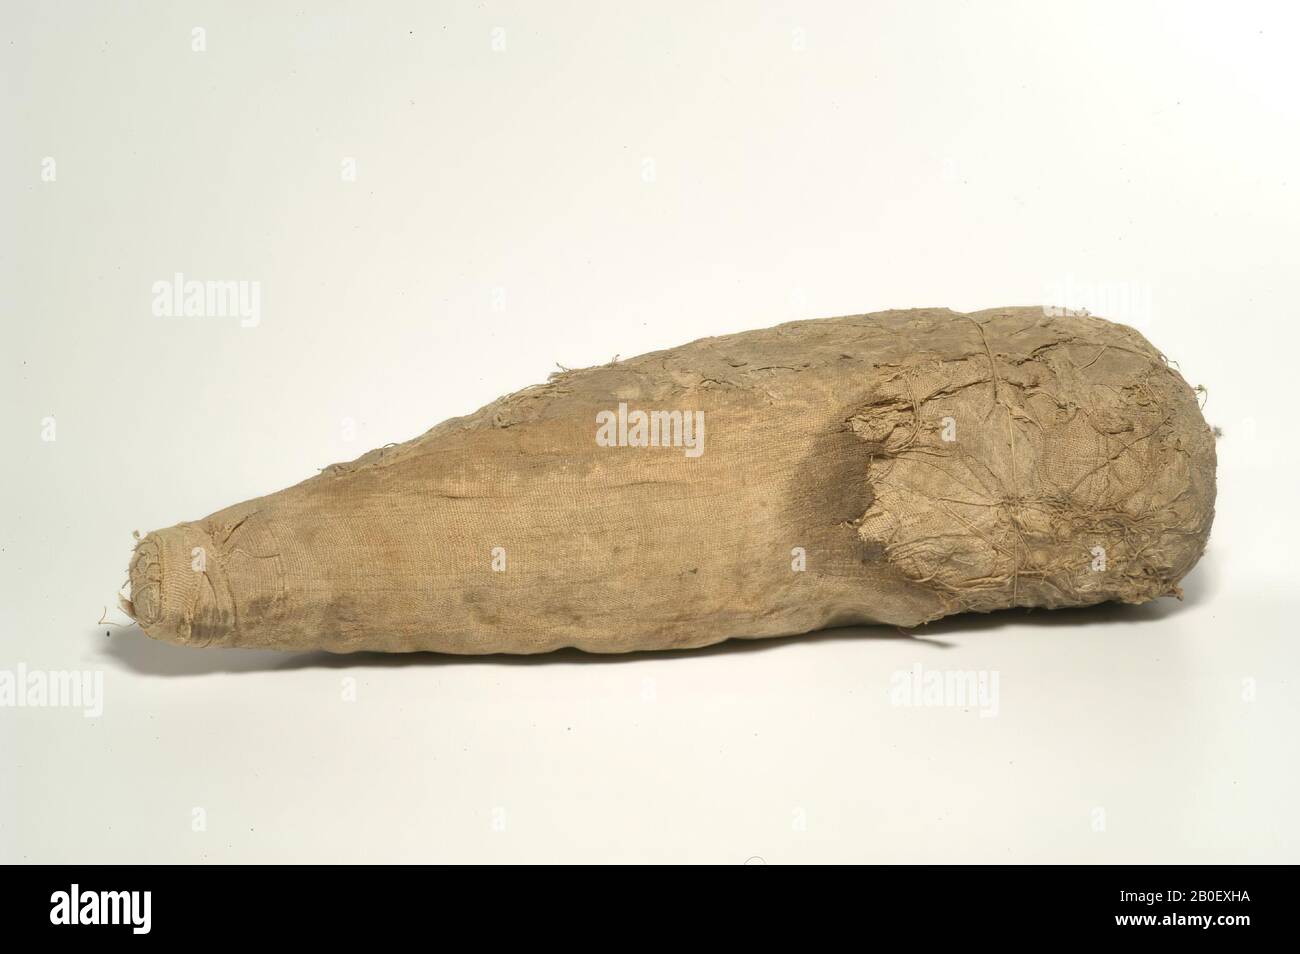 Ibis, La momia tiene la forma de un cuerpo triangular con un área de hombro recta, que se tape hasta el extremo caudal. La parte distal del cuerpo está envuelta en una hoja decayada de dos bandas (tejido tabby con cara de urdimbre, alrededor de 10 x 22 hilos Foto de stock